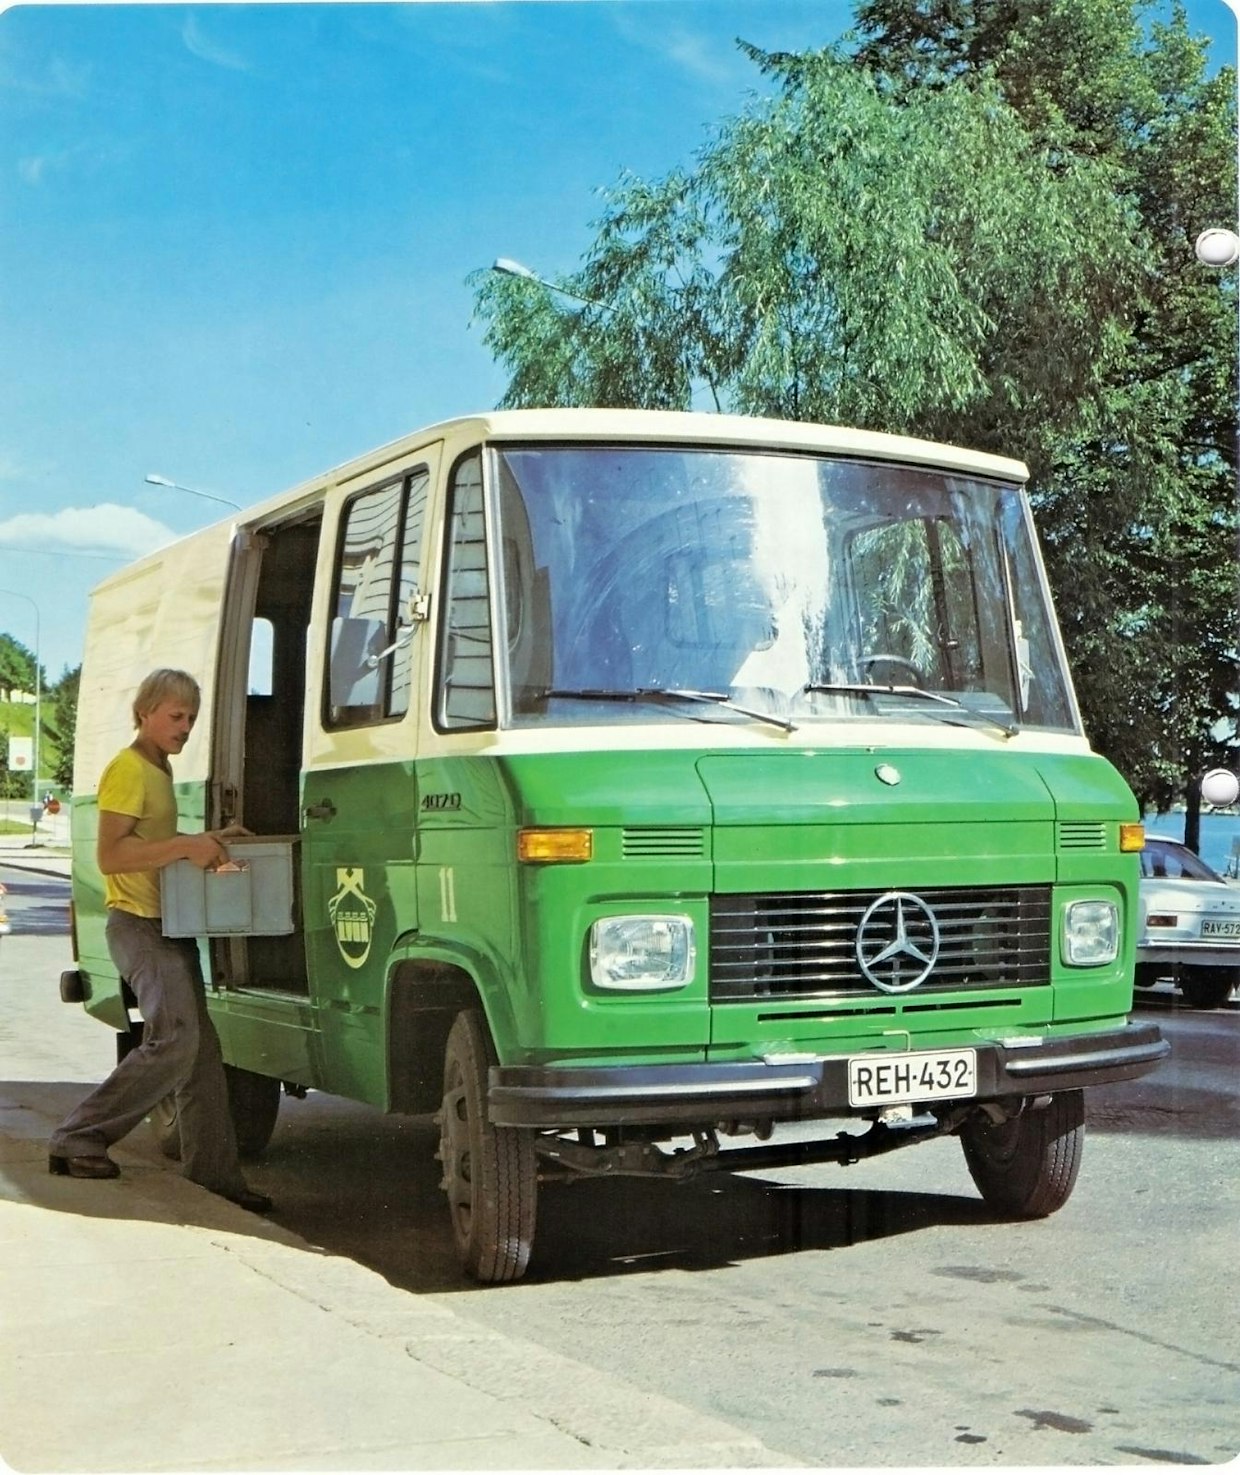 Mercedes-Benzin kevyet jakeluautot ovat saavuttaneet vankan aseman Suomessa. Suosio perustuu suurelta osin vuonna 1968 myyntiin tulleeseen T2-mallisarjaan (Transporter). Se saavutti lopulta lähes 20 vuoden malli-iän, sillä T2 korvattiin vasta 1996 täysin uudistuneella mallilla nimeltä Sprinter. Kuvassa on Mercedes-Benz Transporter L 407D vuonna 1979. Tässä mallissa oli 2,4 litran OM 616 -diesel, joka oli saatavana vuodesta 1974 alkaen.